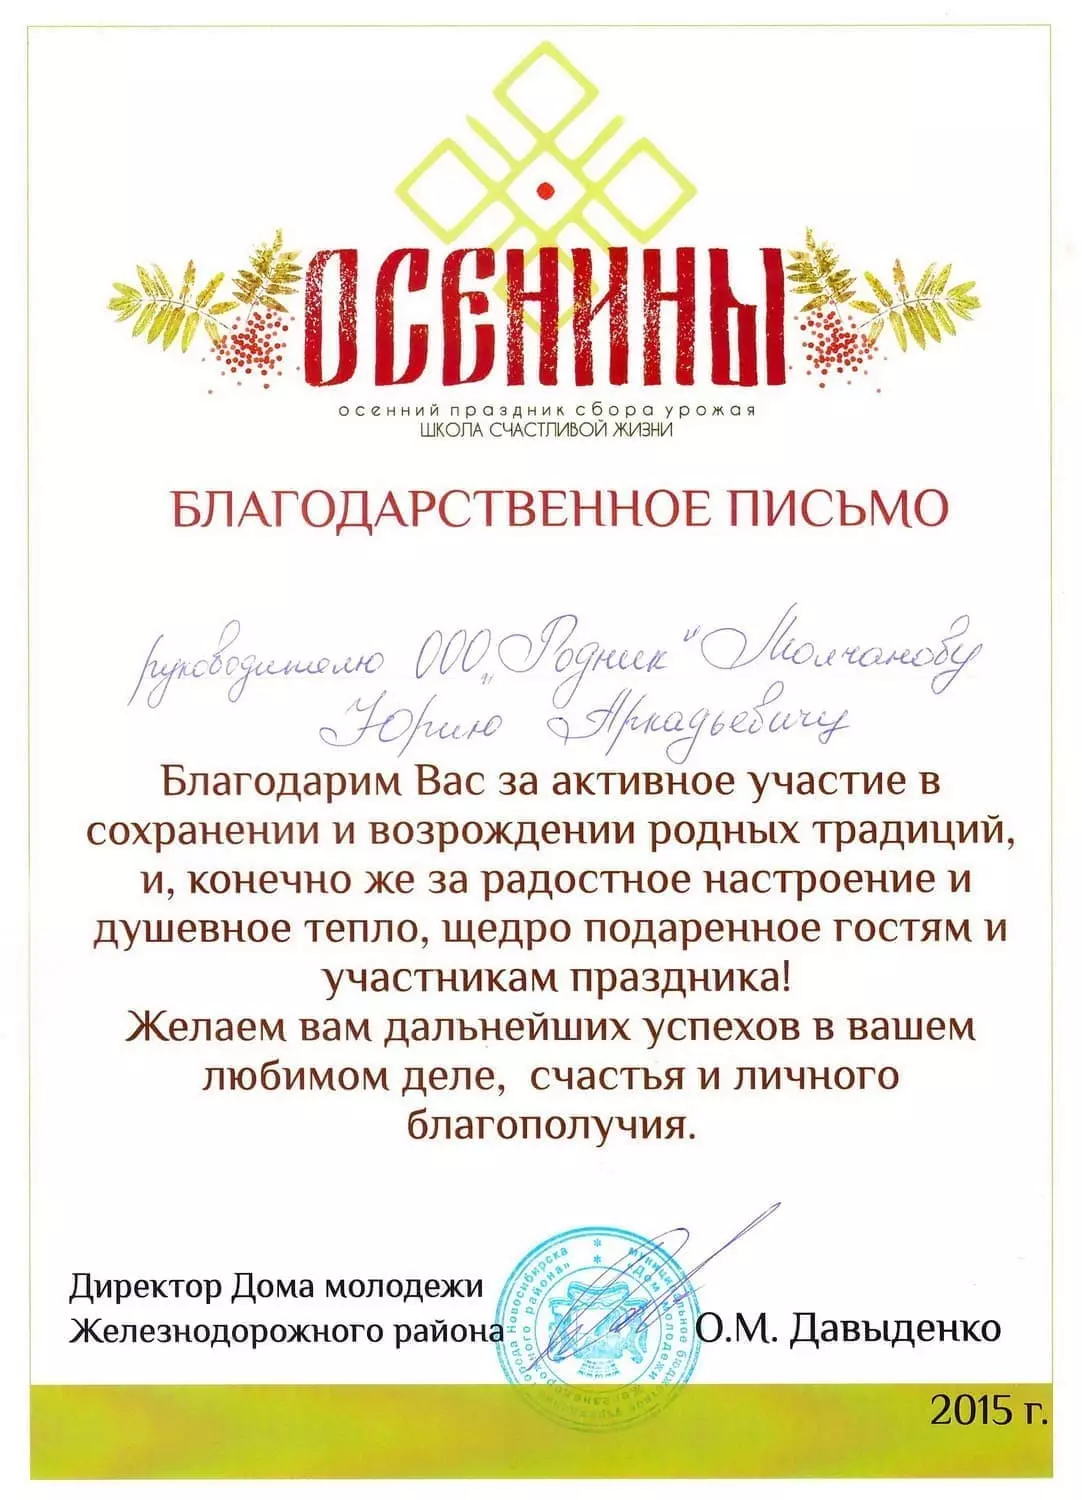 Благодарственное письмо от Дома молодежи г. Новосибирск